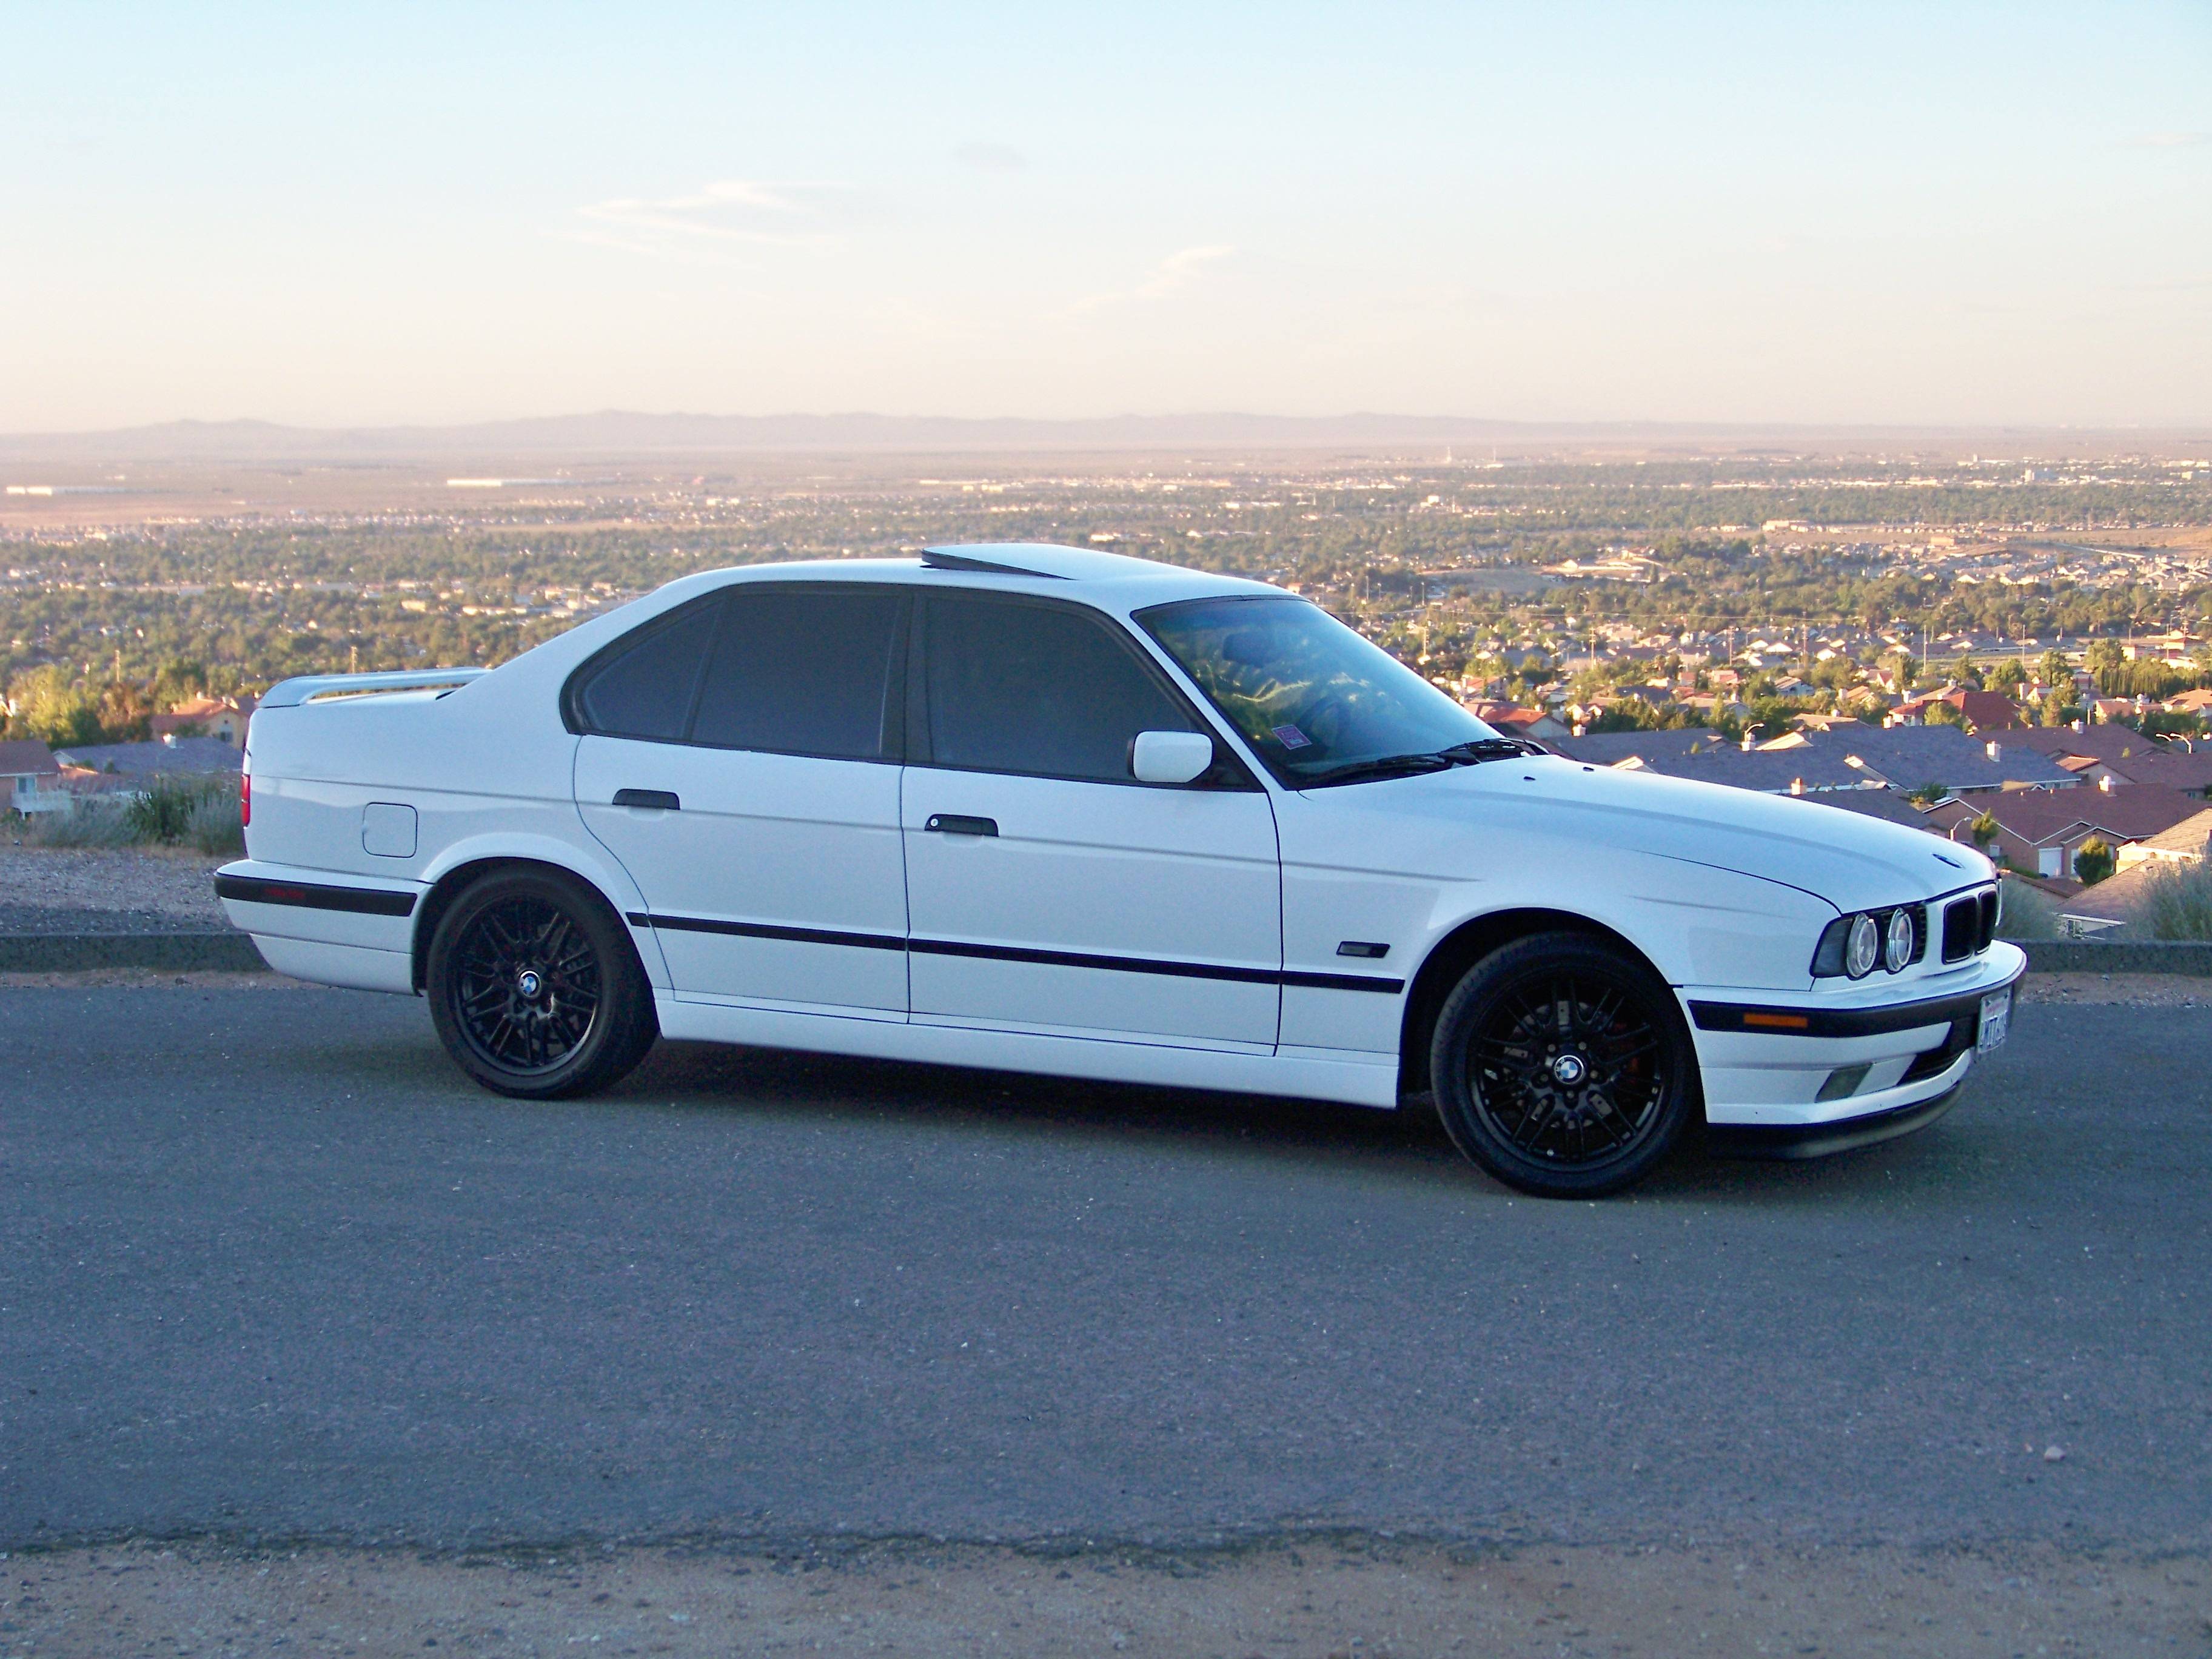 1995  BMW 540i  60-130 MPH Scan